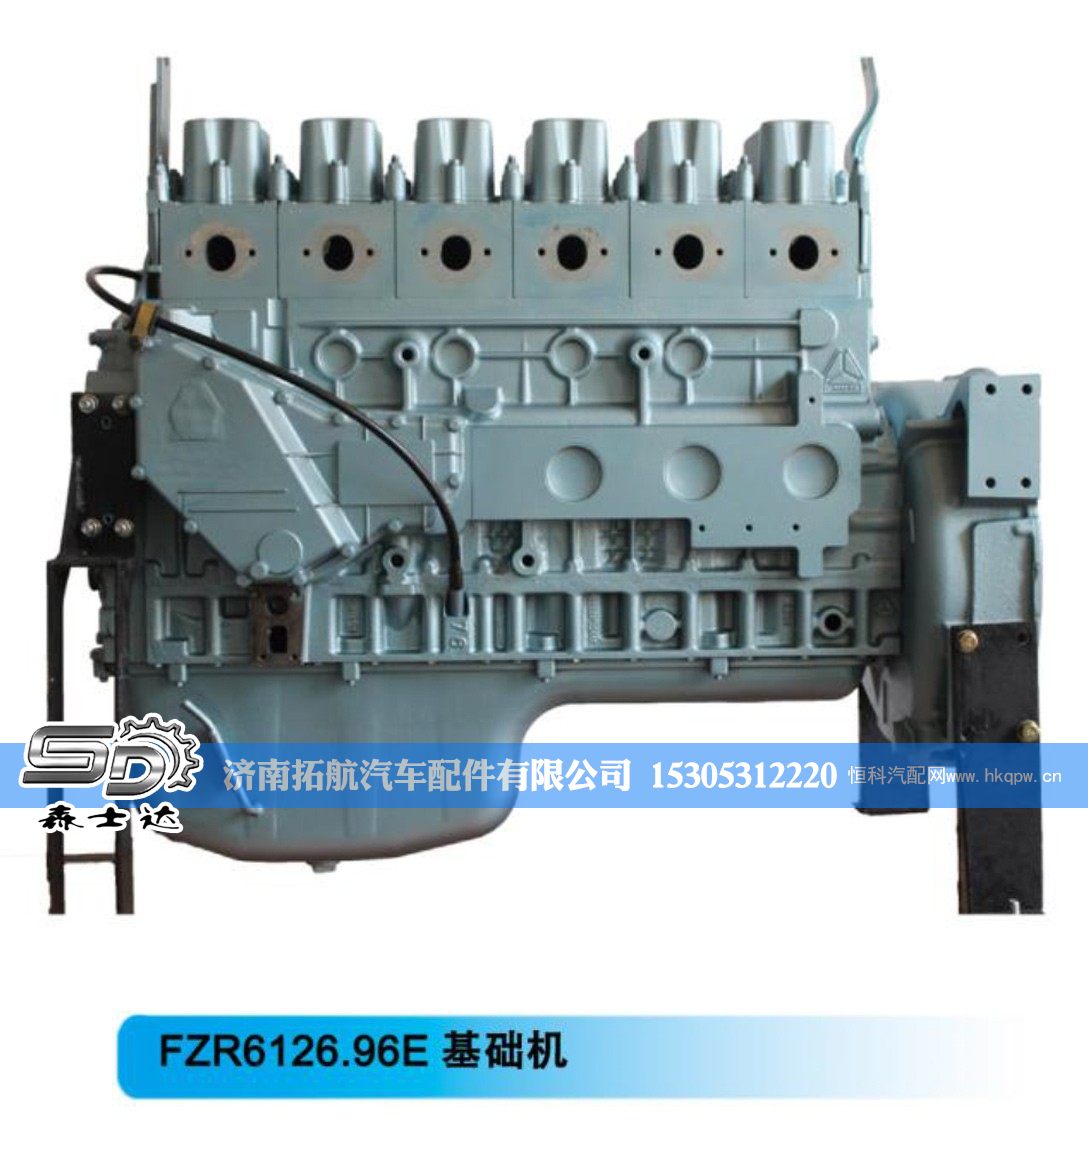 再制造基础机--FZR6126.96E基础机【森士达】/